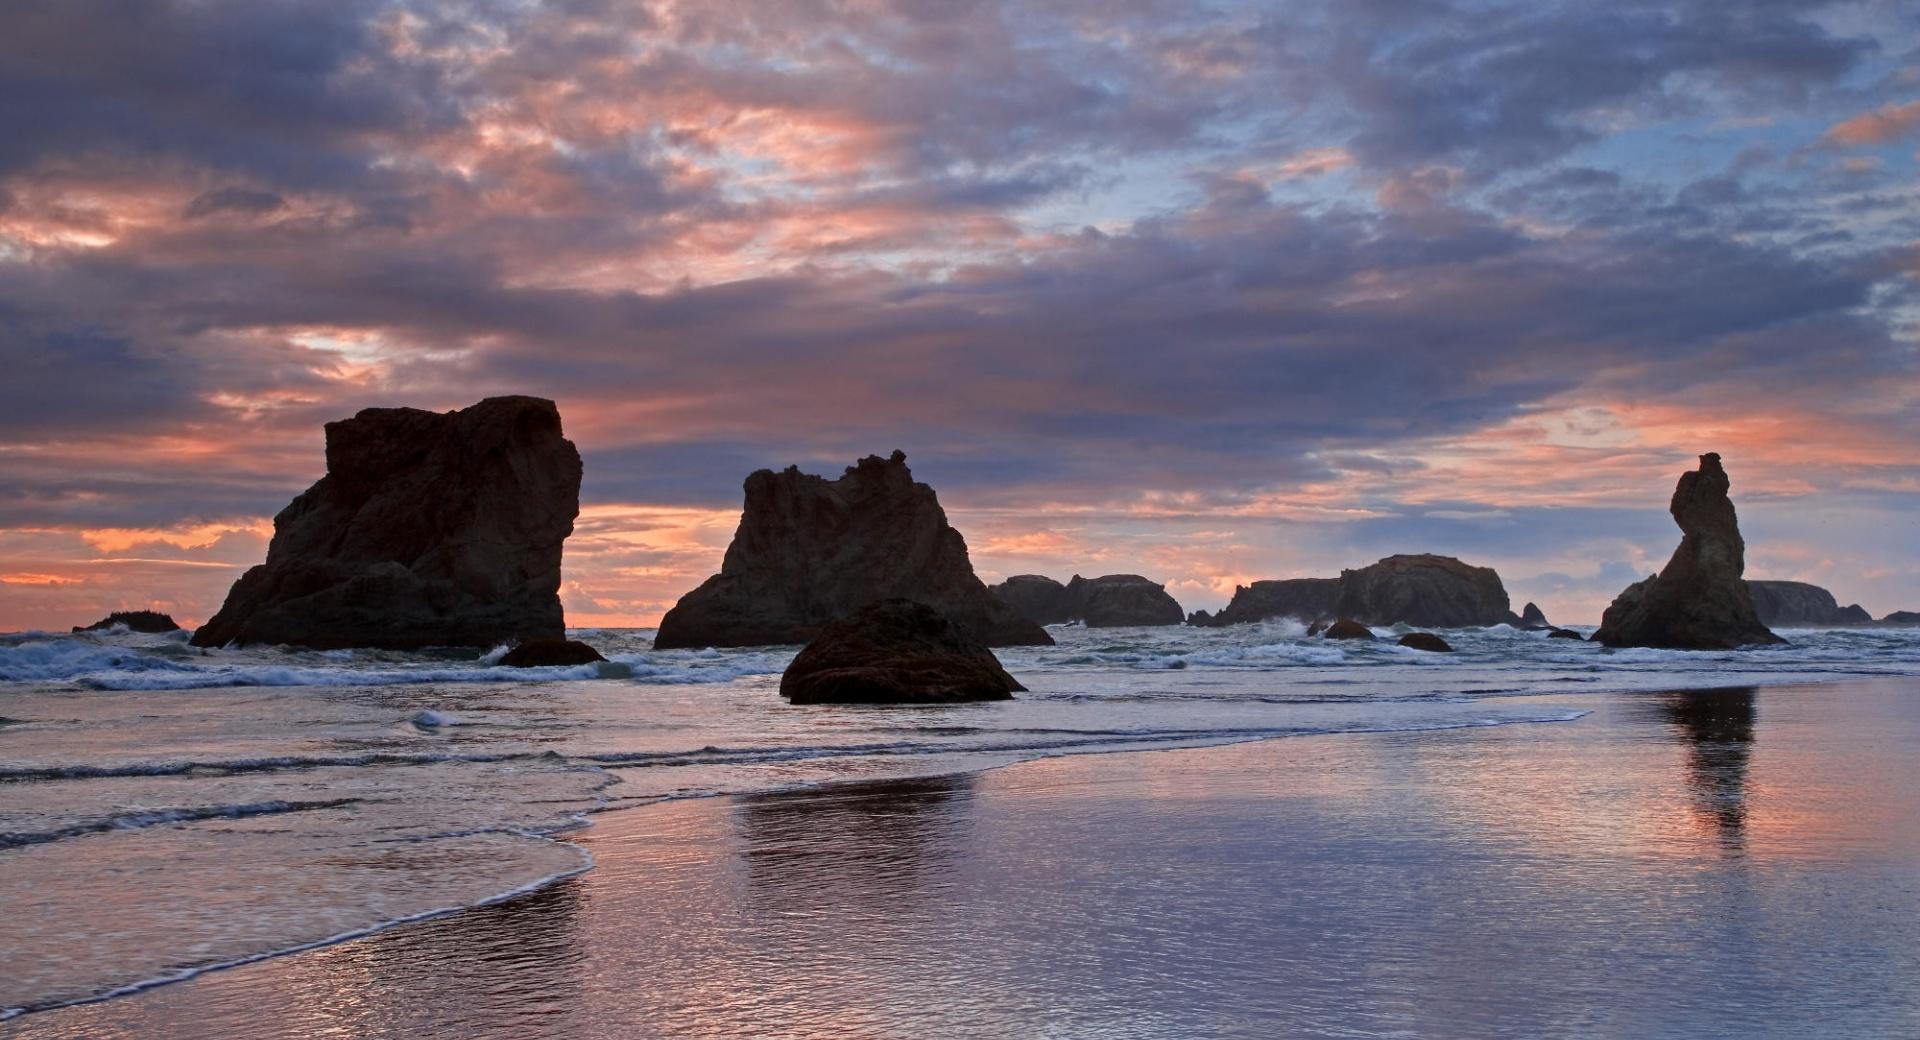 Sea Stacks At Sunset Bandon Oregon at 2048 x 2048 iPad size wallpapers HD quality